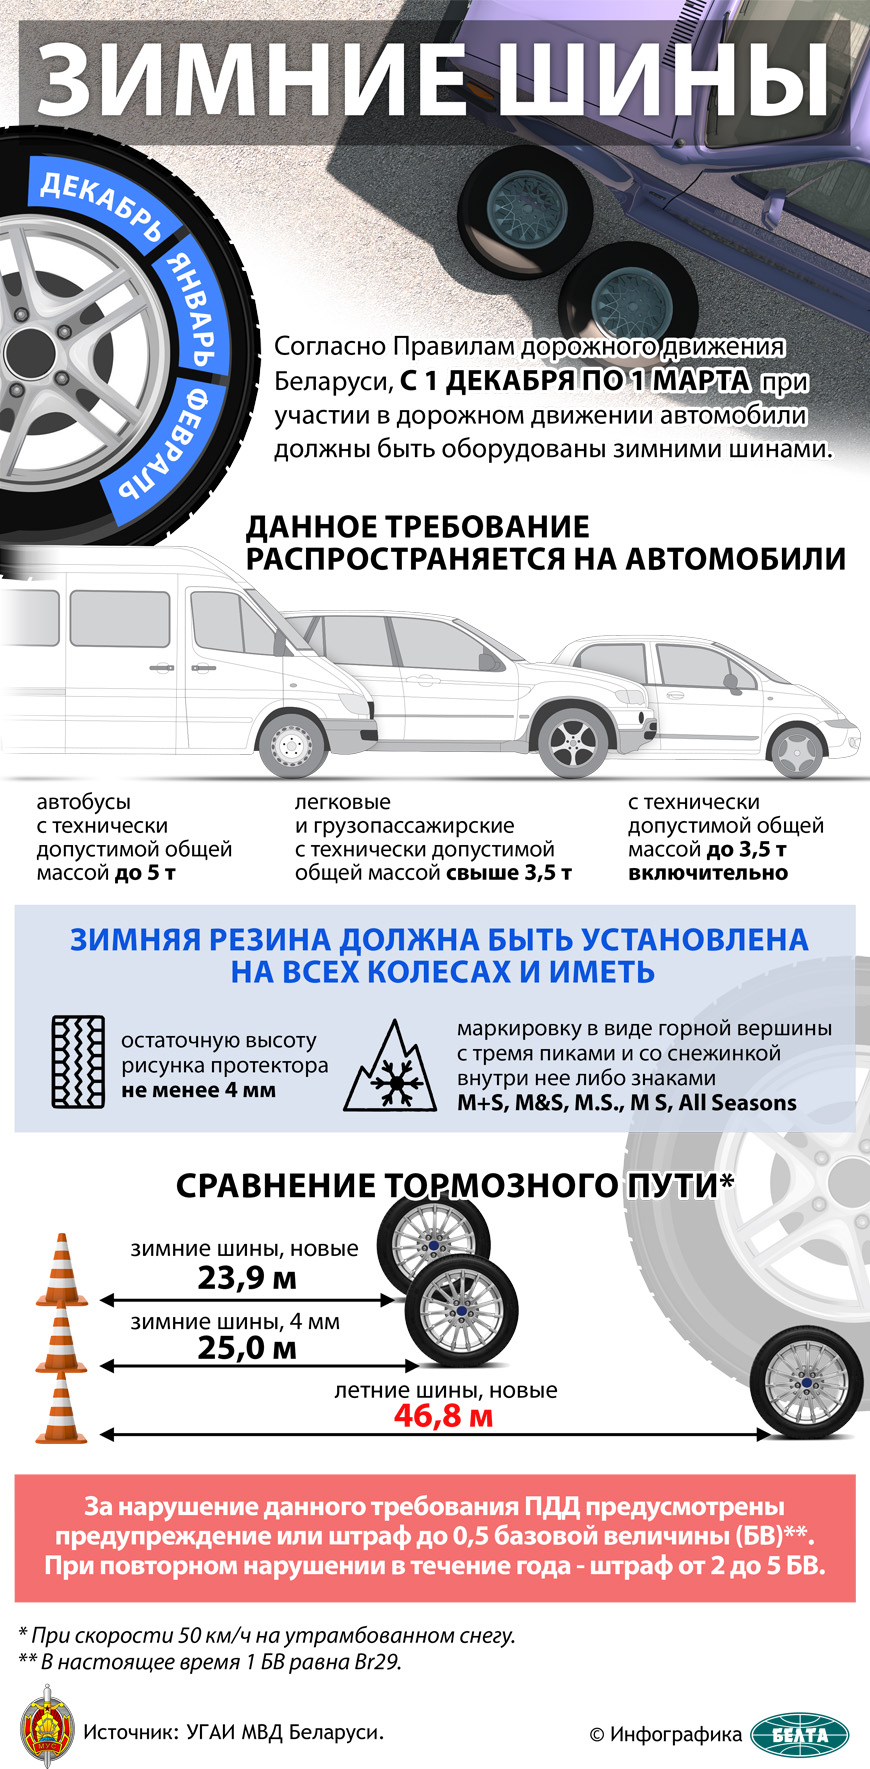 С 1 декабря по 1 марта автомобили должны быть оборудованными зимними шинами (инфографика)